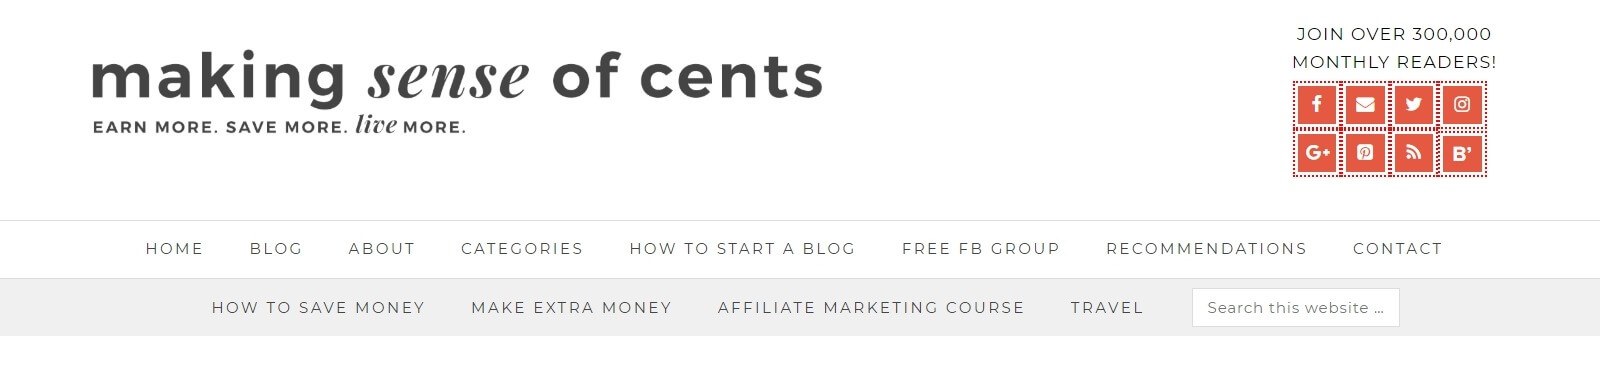 Página do blog do site de afiliados Making Sense of Cents